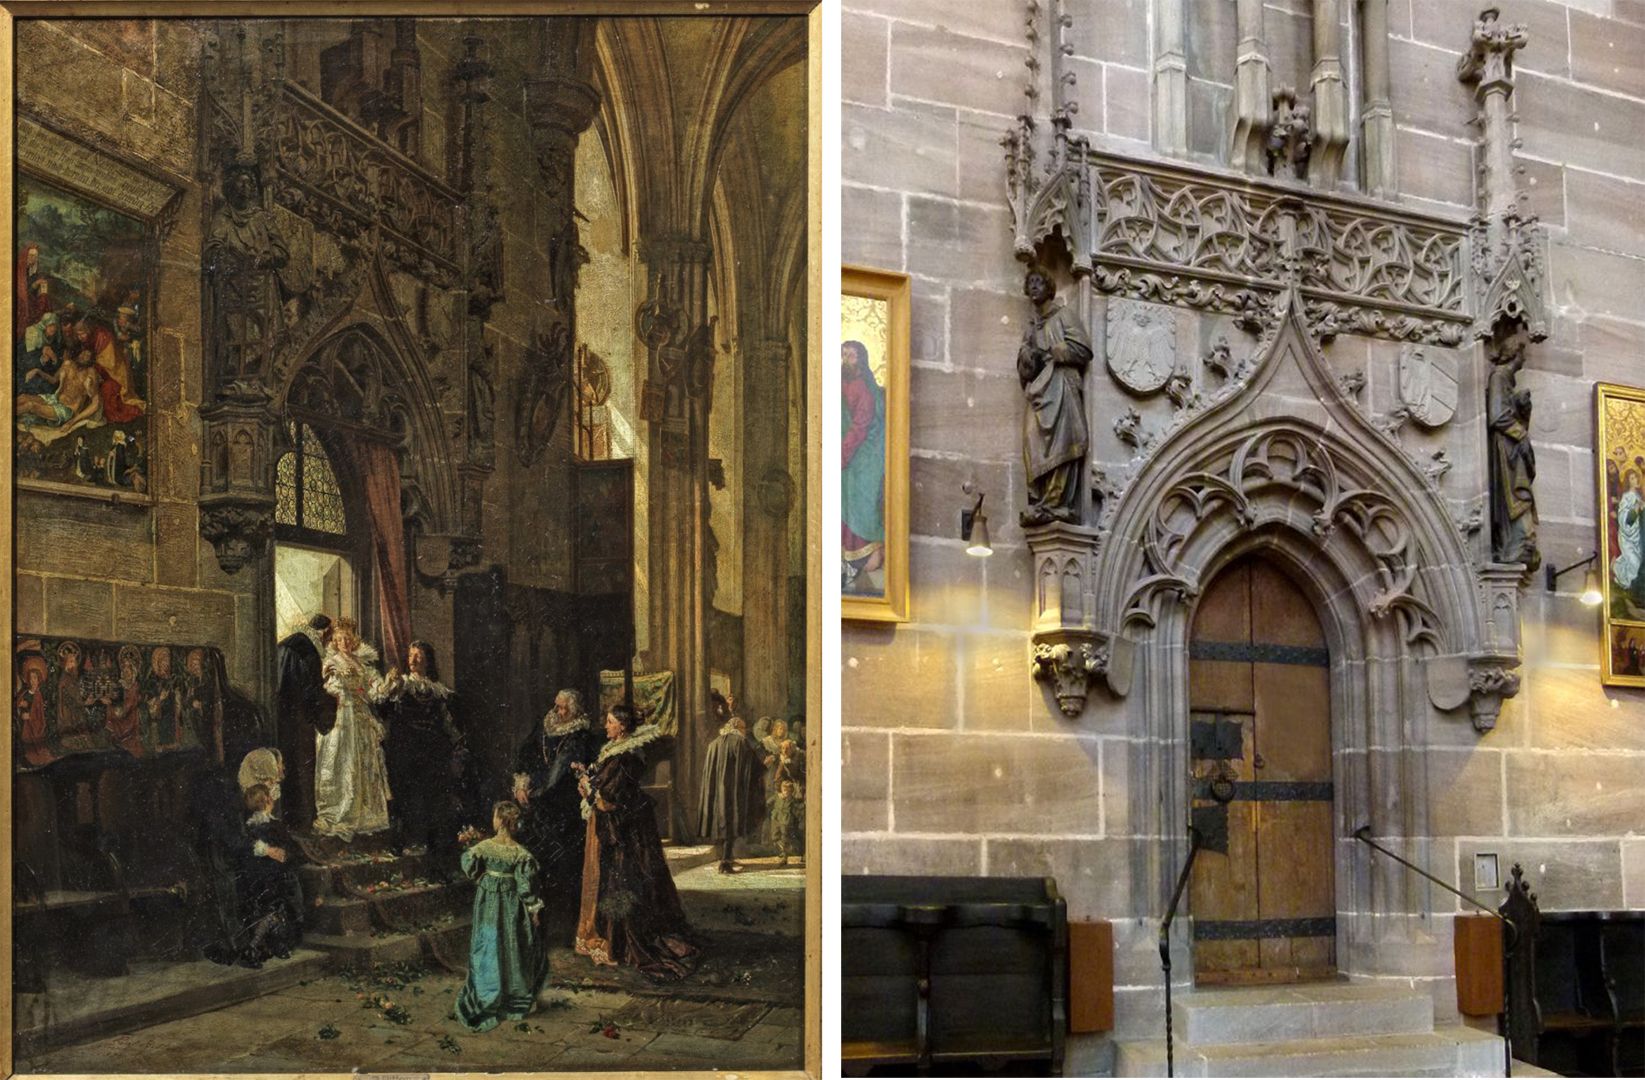 Hochzeitsgesellschaft unter dem Beheim-Chörlein von St. Lorenz Bildvergleich: links Bilddetail, rechts Foto des Portals der Sakristei in St. Lorenz